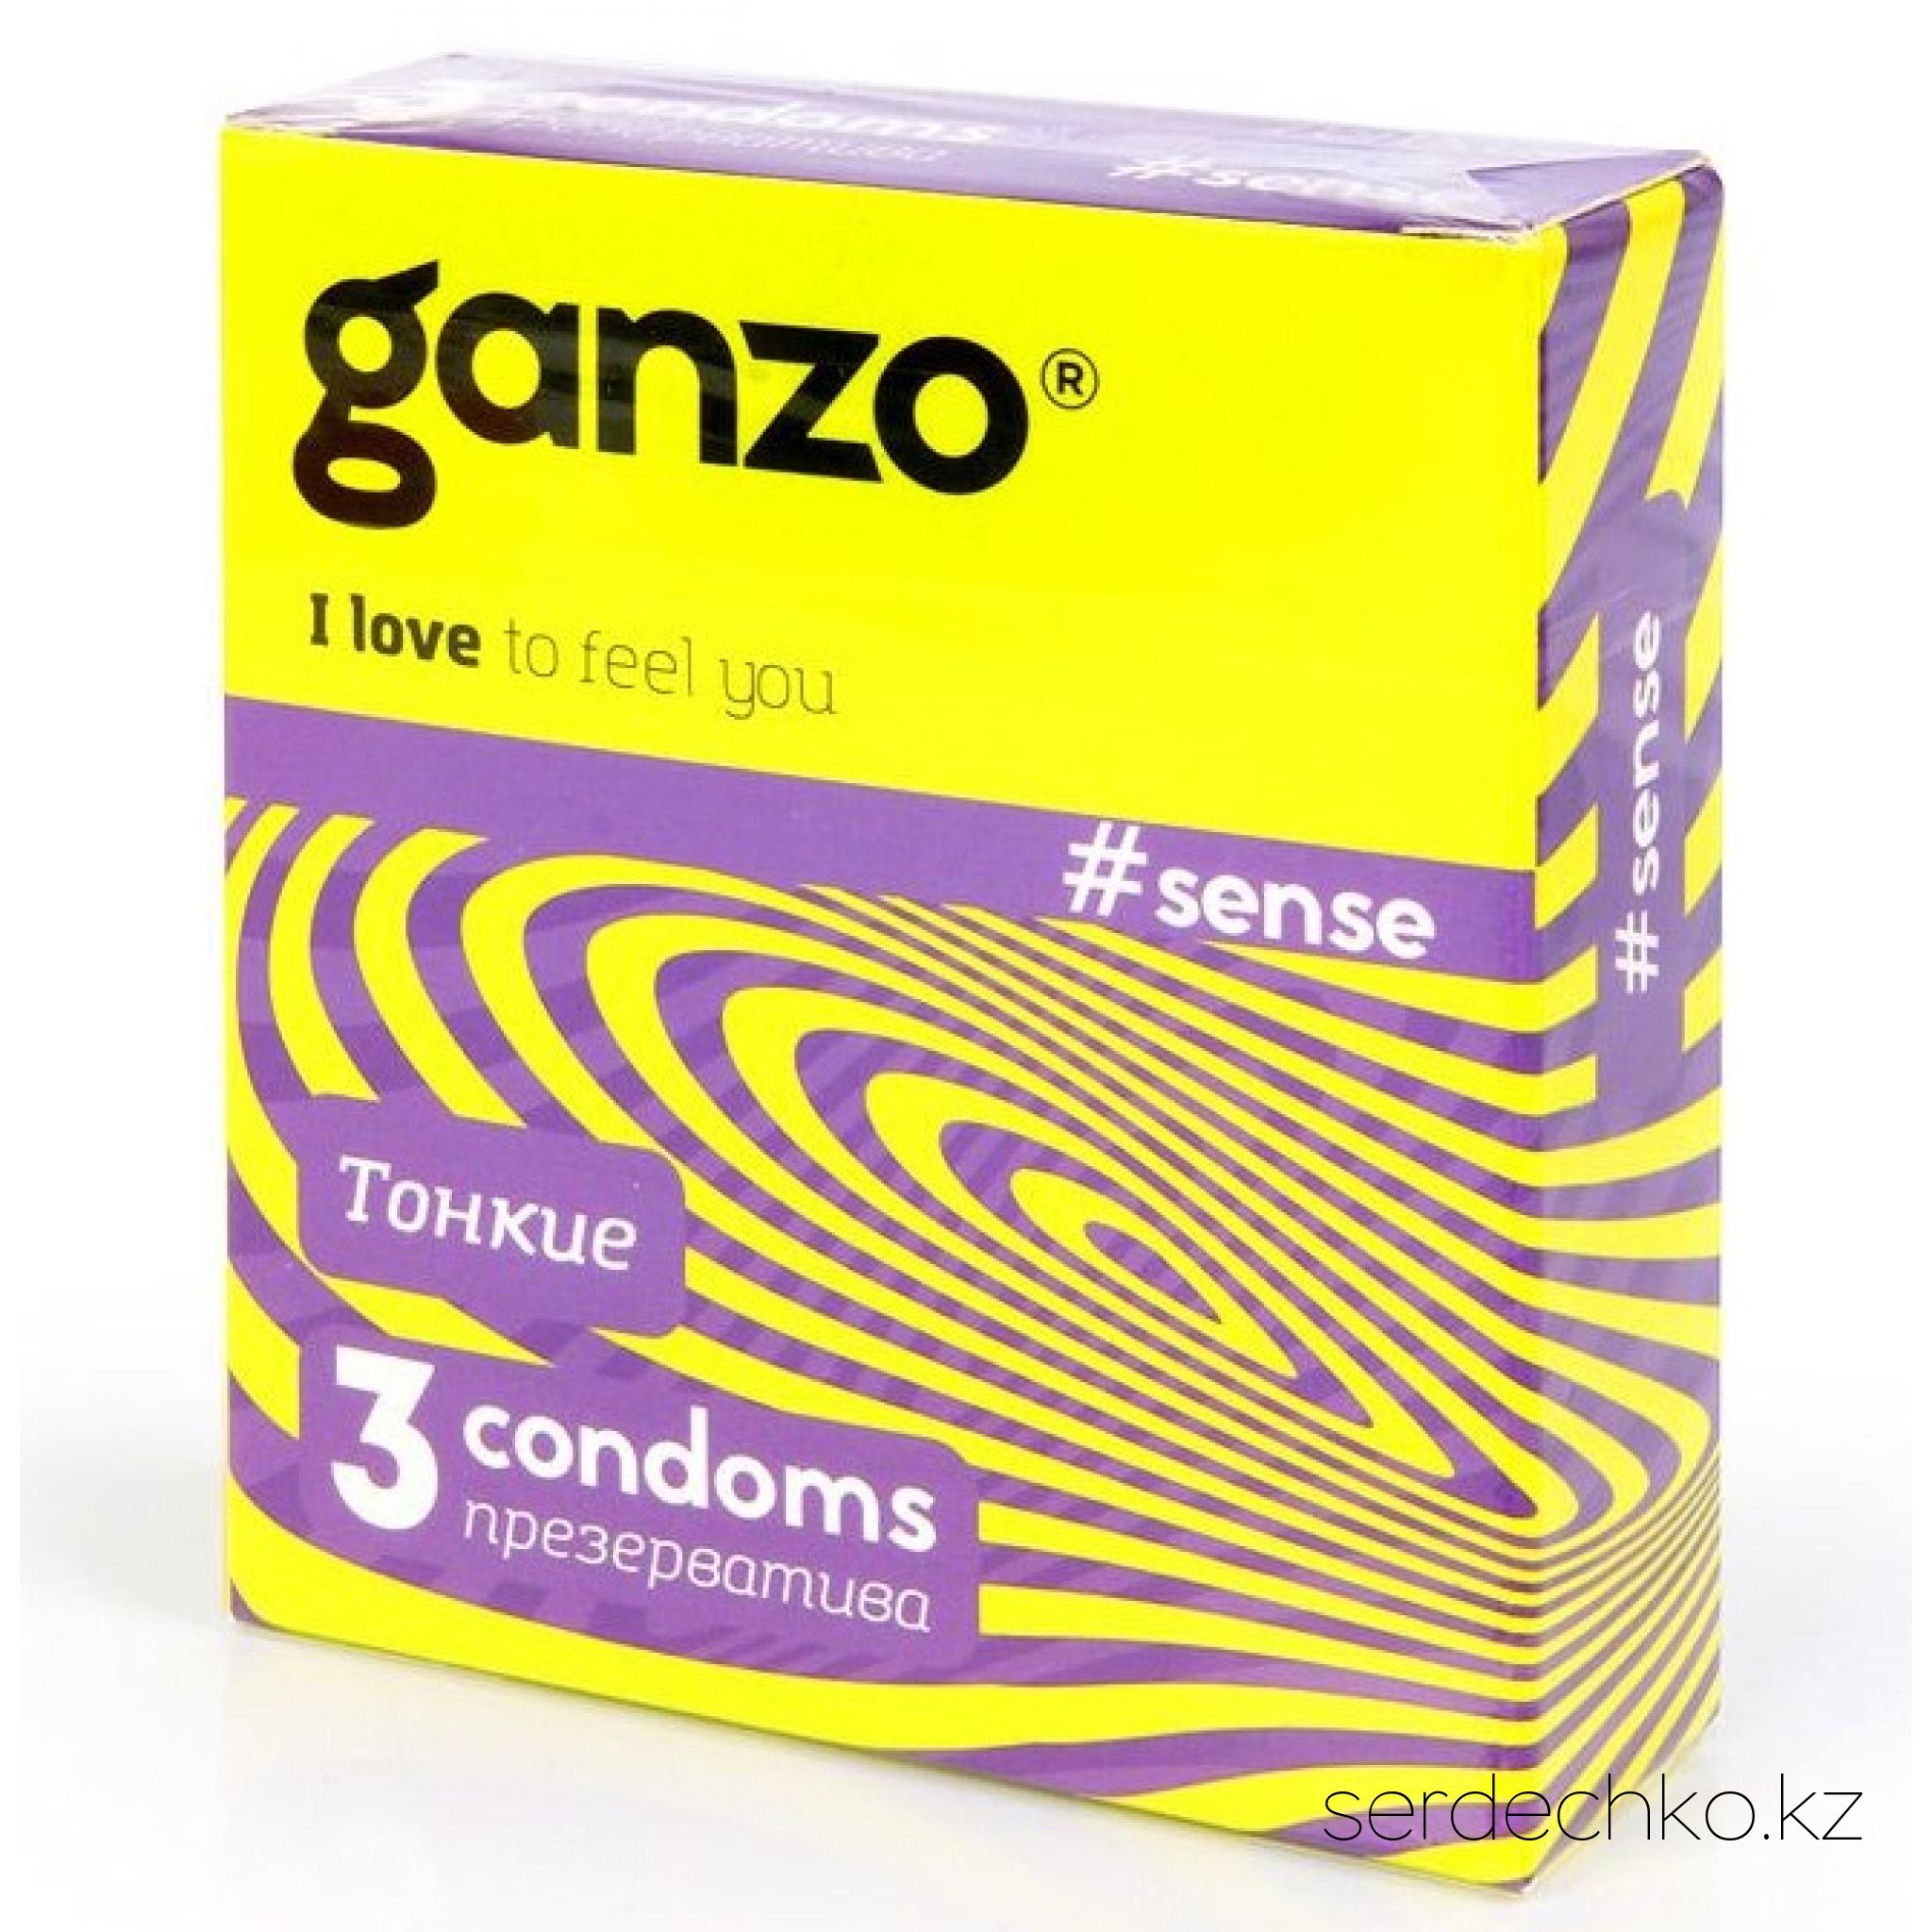 ПРЕЗЕРВАТИВЫ GANZO SENSE №3 (тонкие), 
	Не все мужчины любят секс с презервативом. “А что здесь любить? Это как цветы в противогазе нюхать, а потом рассказывать об их тонком аромате…” — делятся своими переживаниями мужчины. Вот как раз для таких тонко чувствующих мужчин и были созданы презервативы Ganzo Sense. Их тонкая стенка, всего 0,05 мм в толщину, позволяет насладиться каждым прикосновением и испытать всю прелесть естественных ощущений!

	Ganzo – презервативный бренд родом из Великобритании, сочетающие в себе качество и доступную стоимость. Все презервативы проходят через 5-ступенчатую систему тестирования электроникой. Натуральный латекс премиального качества и гипоаллергенная смазка на силиконовой основе в составе обеспечат гладкое скольжение во время фрикций. Обязательная сертификация подтверждает качество и безопасность продукции Ganzo
